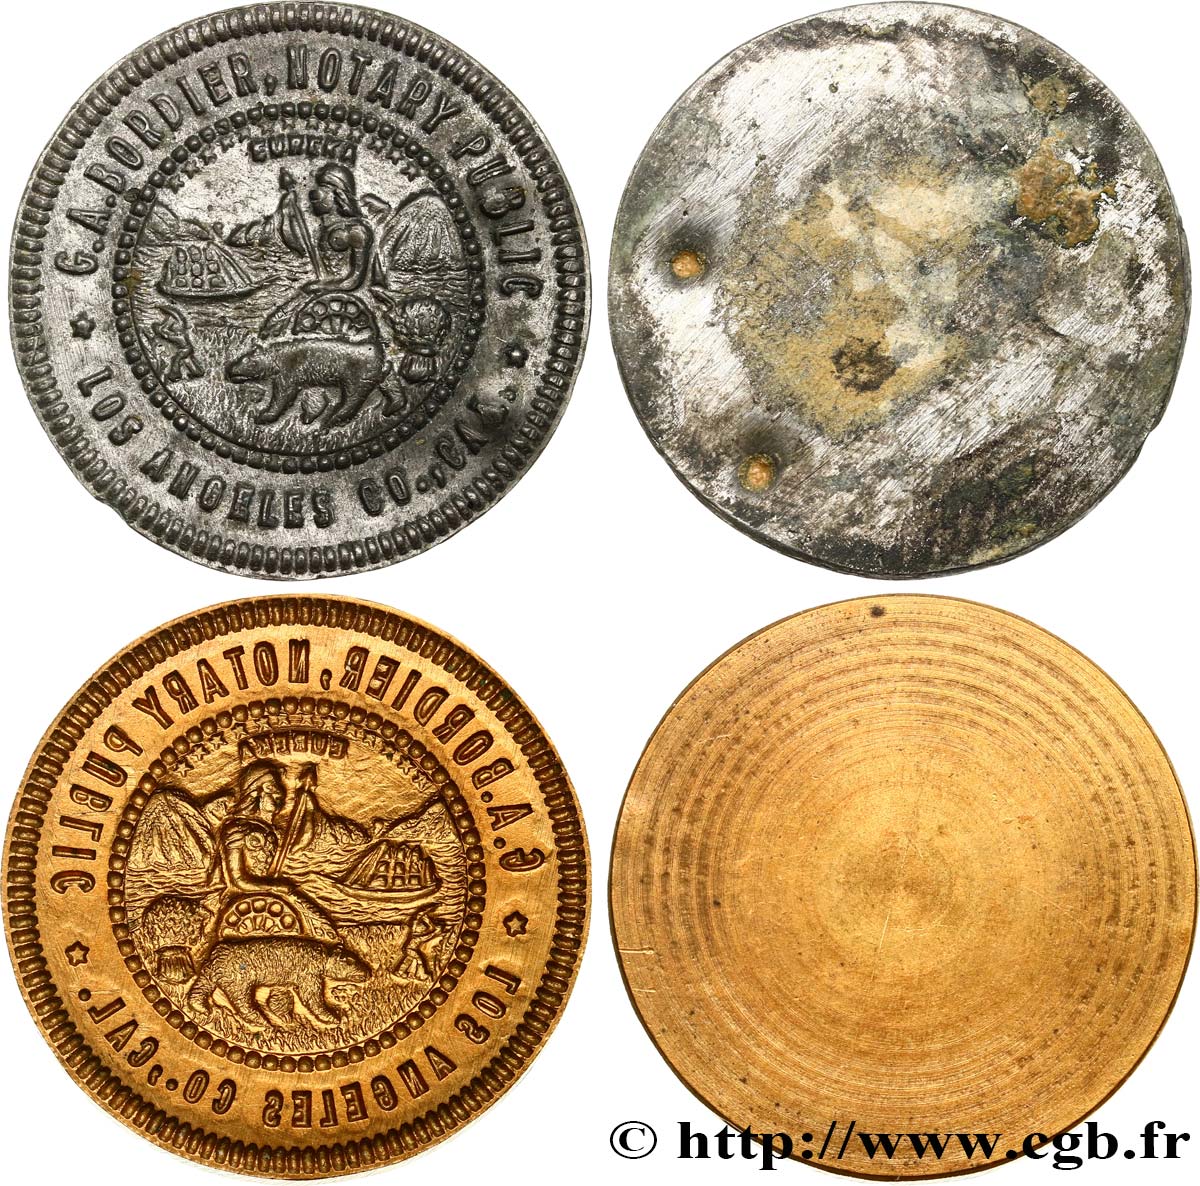 STATI UNITI D AMERICA Coin et empreinte d’un sceau de notaire américain BB